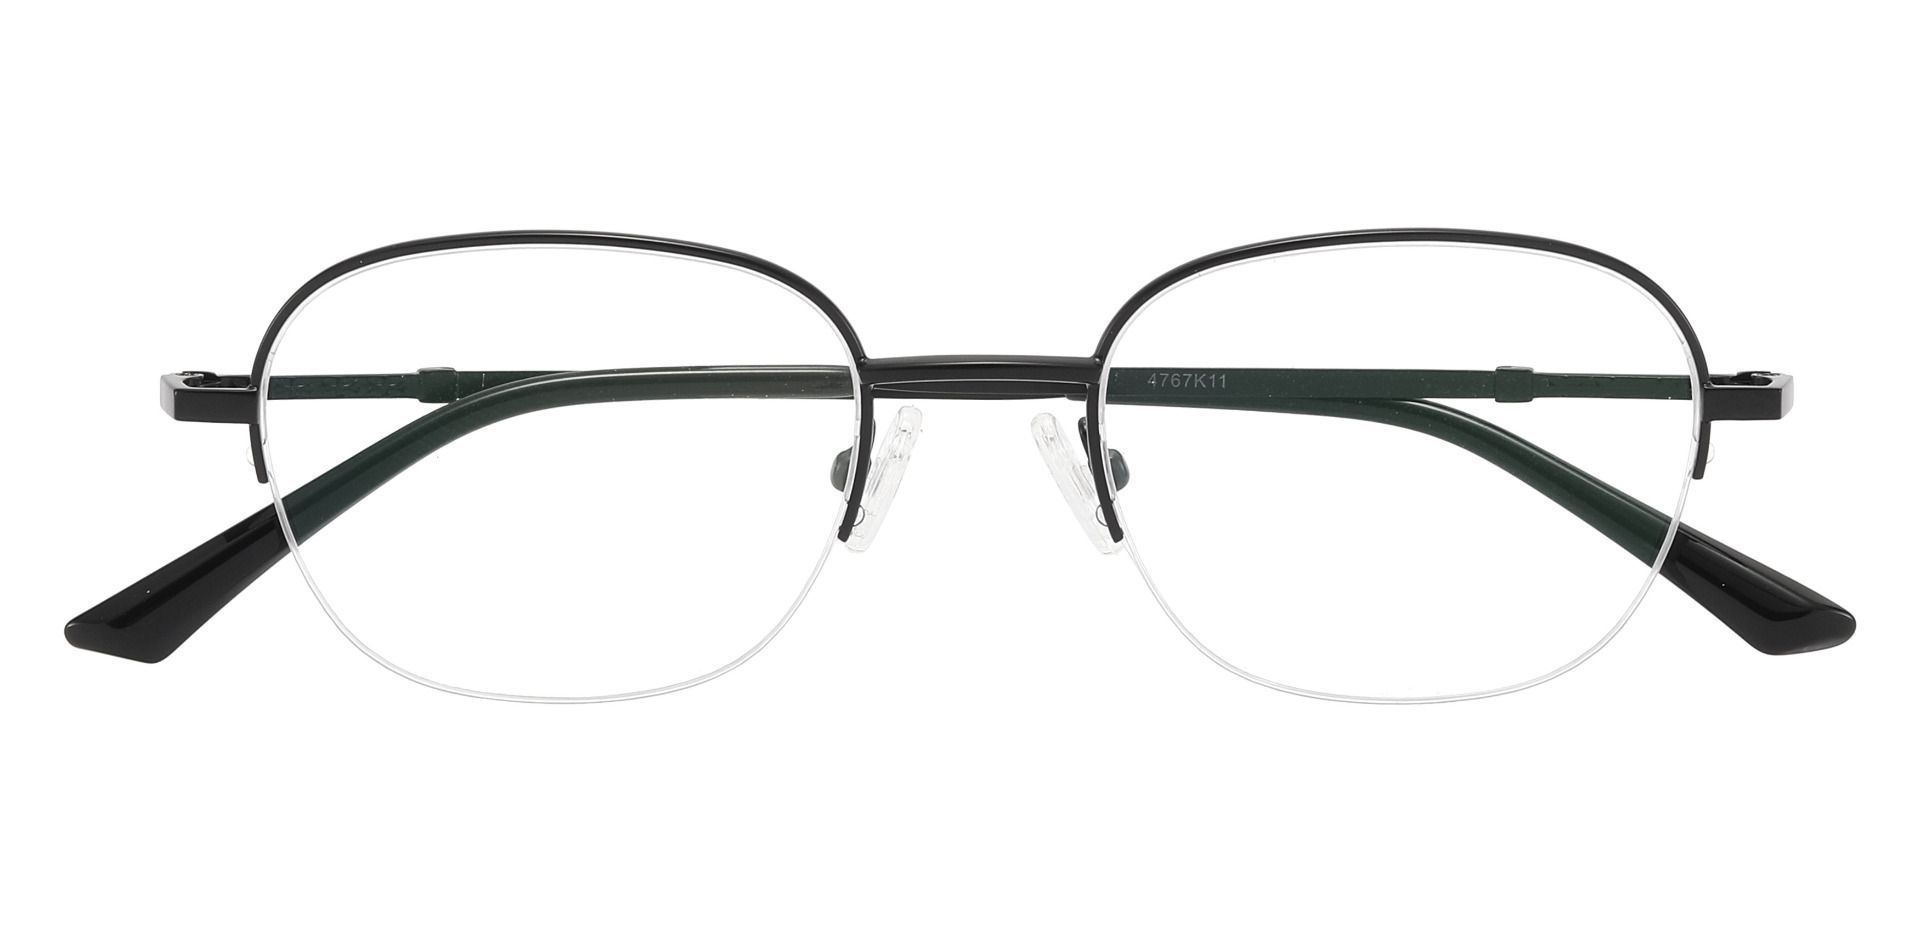 Rochester Oval Prescription Glasses - Black